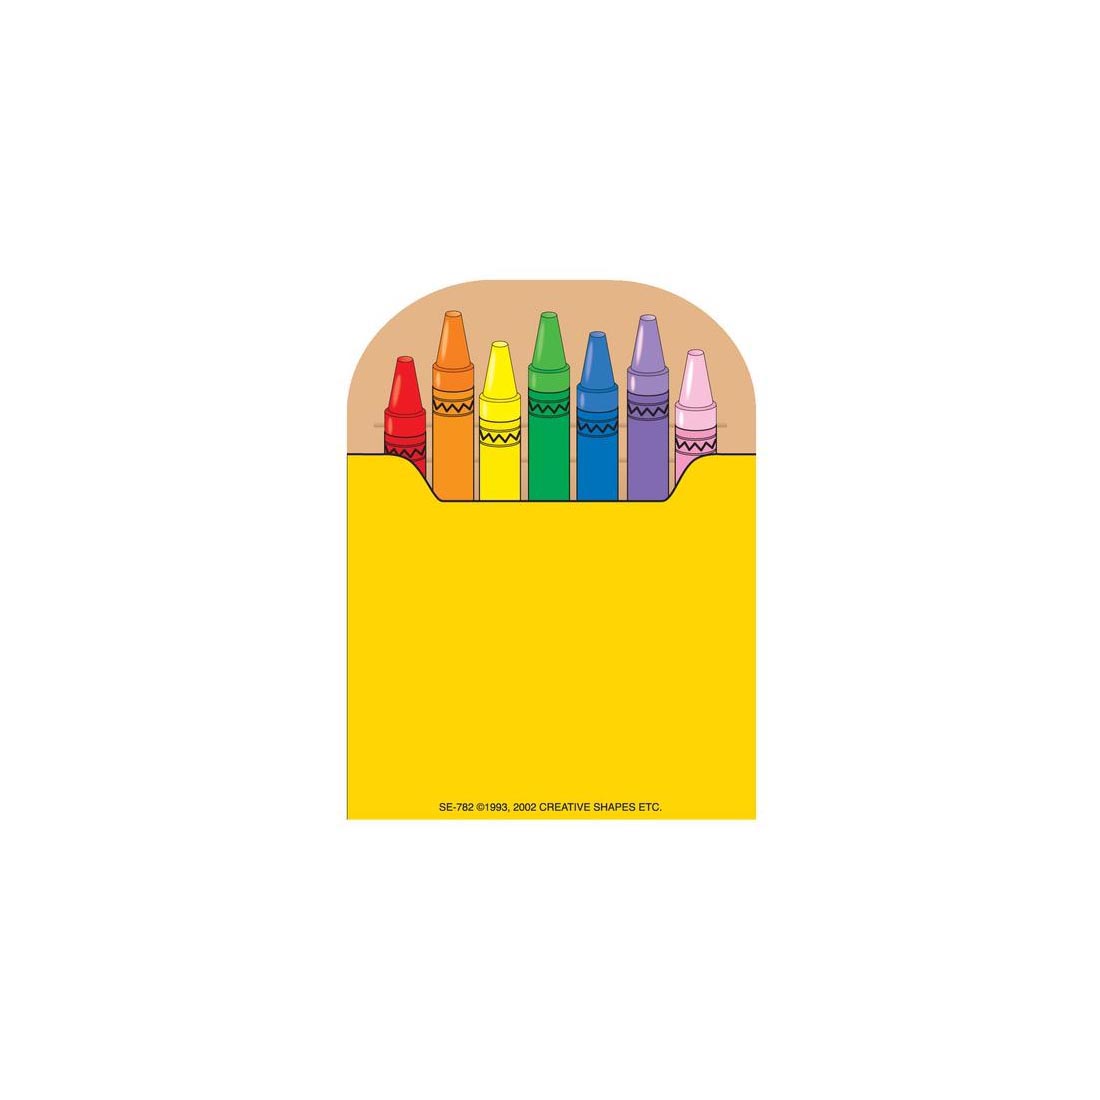 Crayon Box Notepad by Creative Shapes